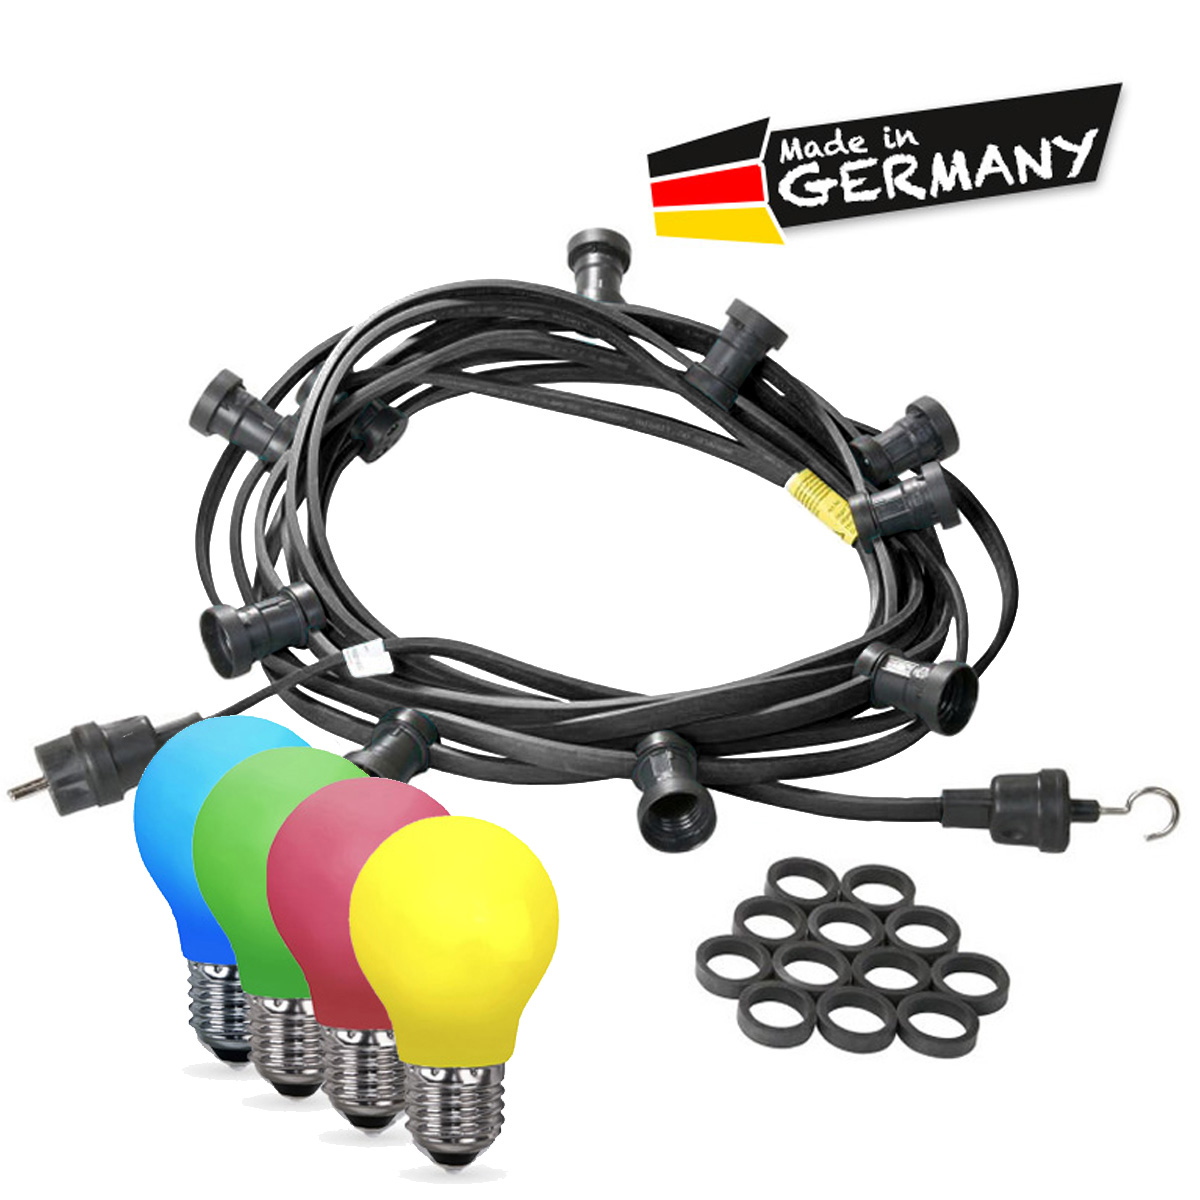 Illu-/Partylichterkette 30m - Außenlichterkette - Made in Germany - 50 x bunte LED Tropfenlampe